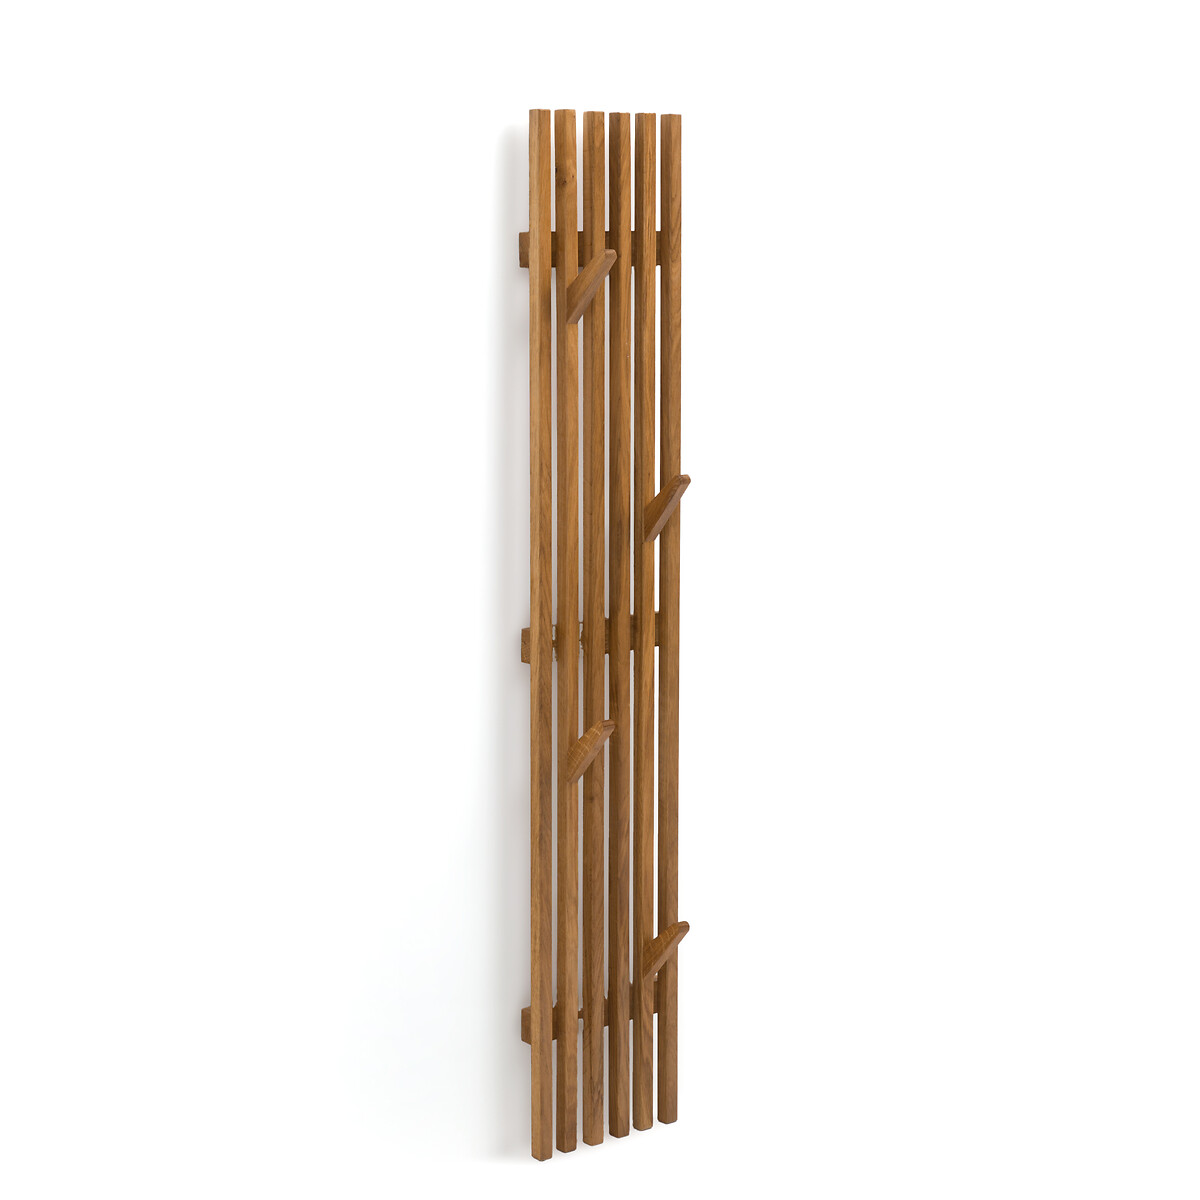 Cabide de pé em metal e madeira, agama preto/madeira La Redoute Interieurs